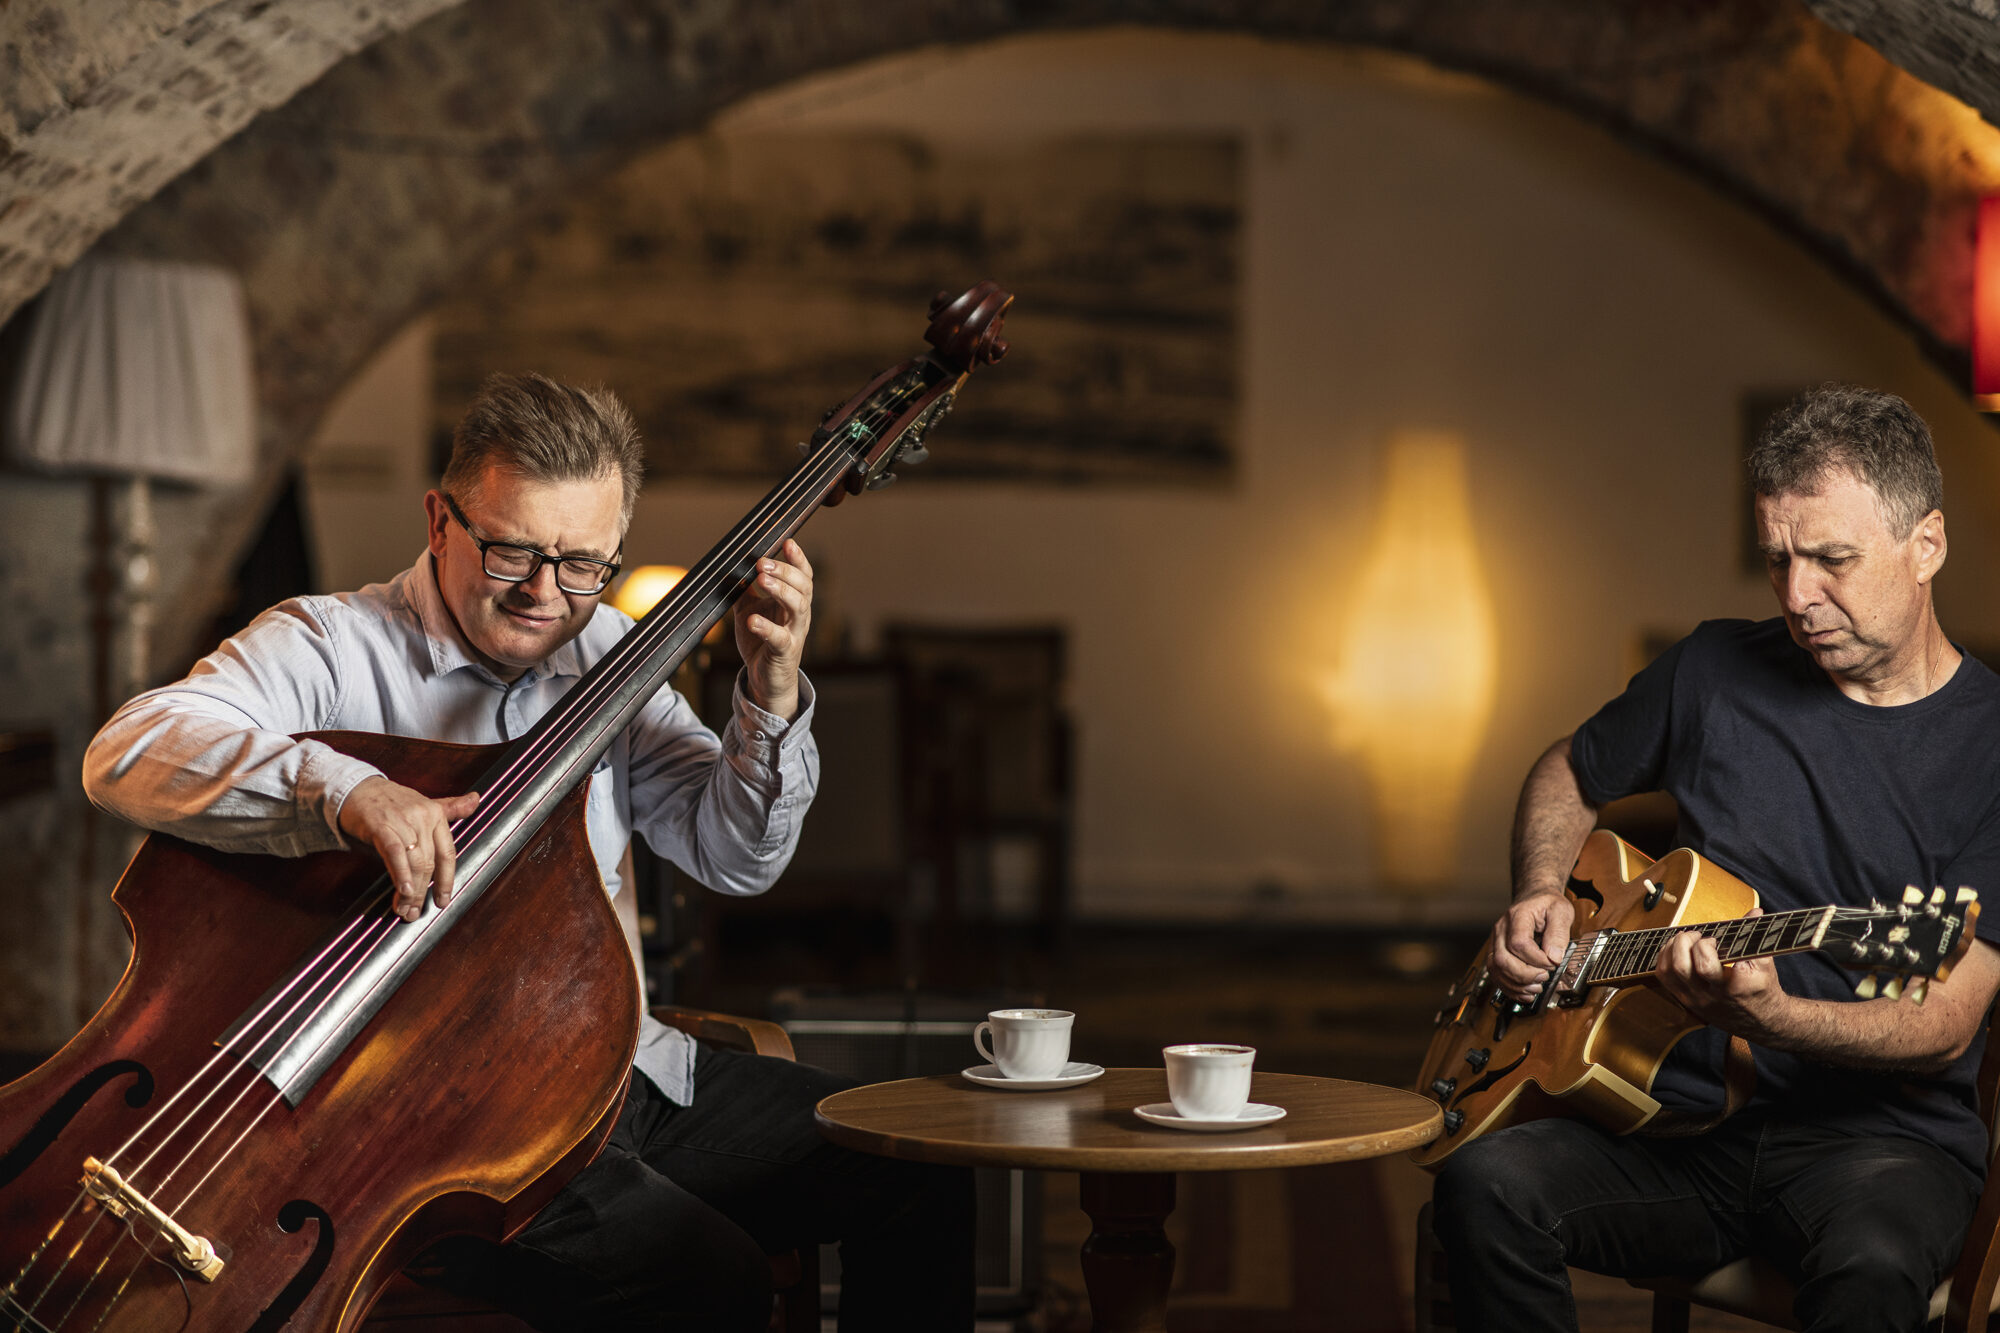 Na zdjęciu muzycy Bohdan Lizoń i Grzegorz Piętak siedzą przy stoliku w kawiarni i grają na instrumentach